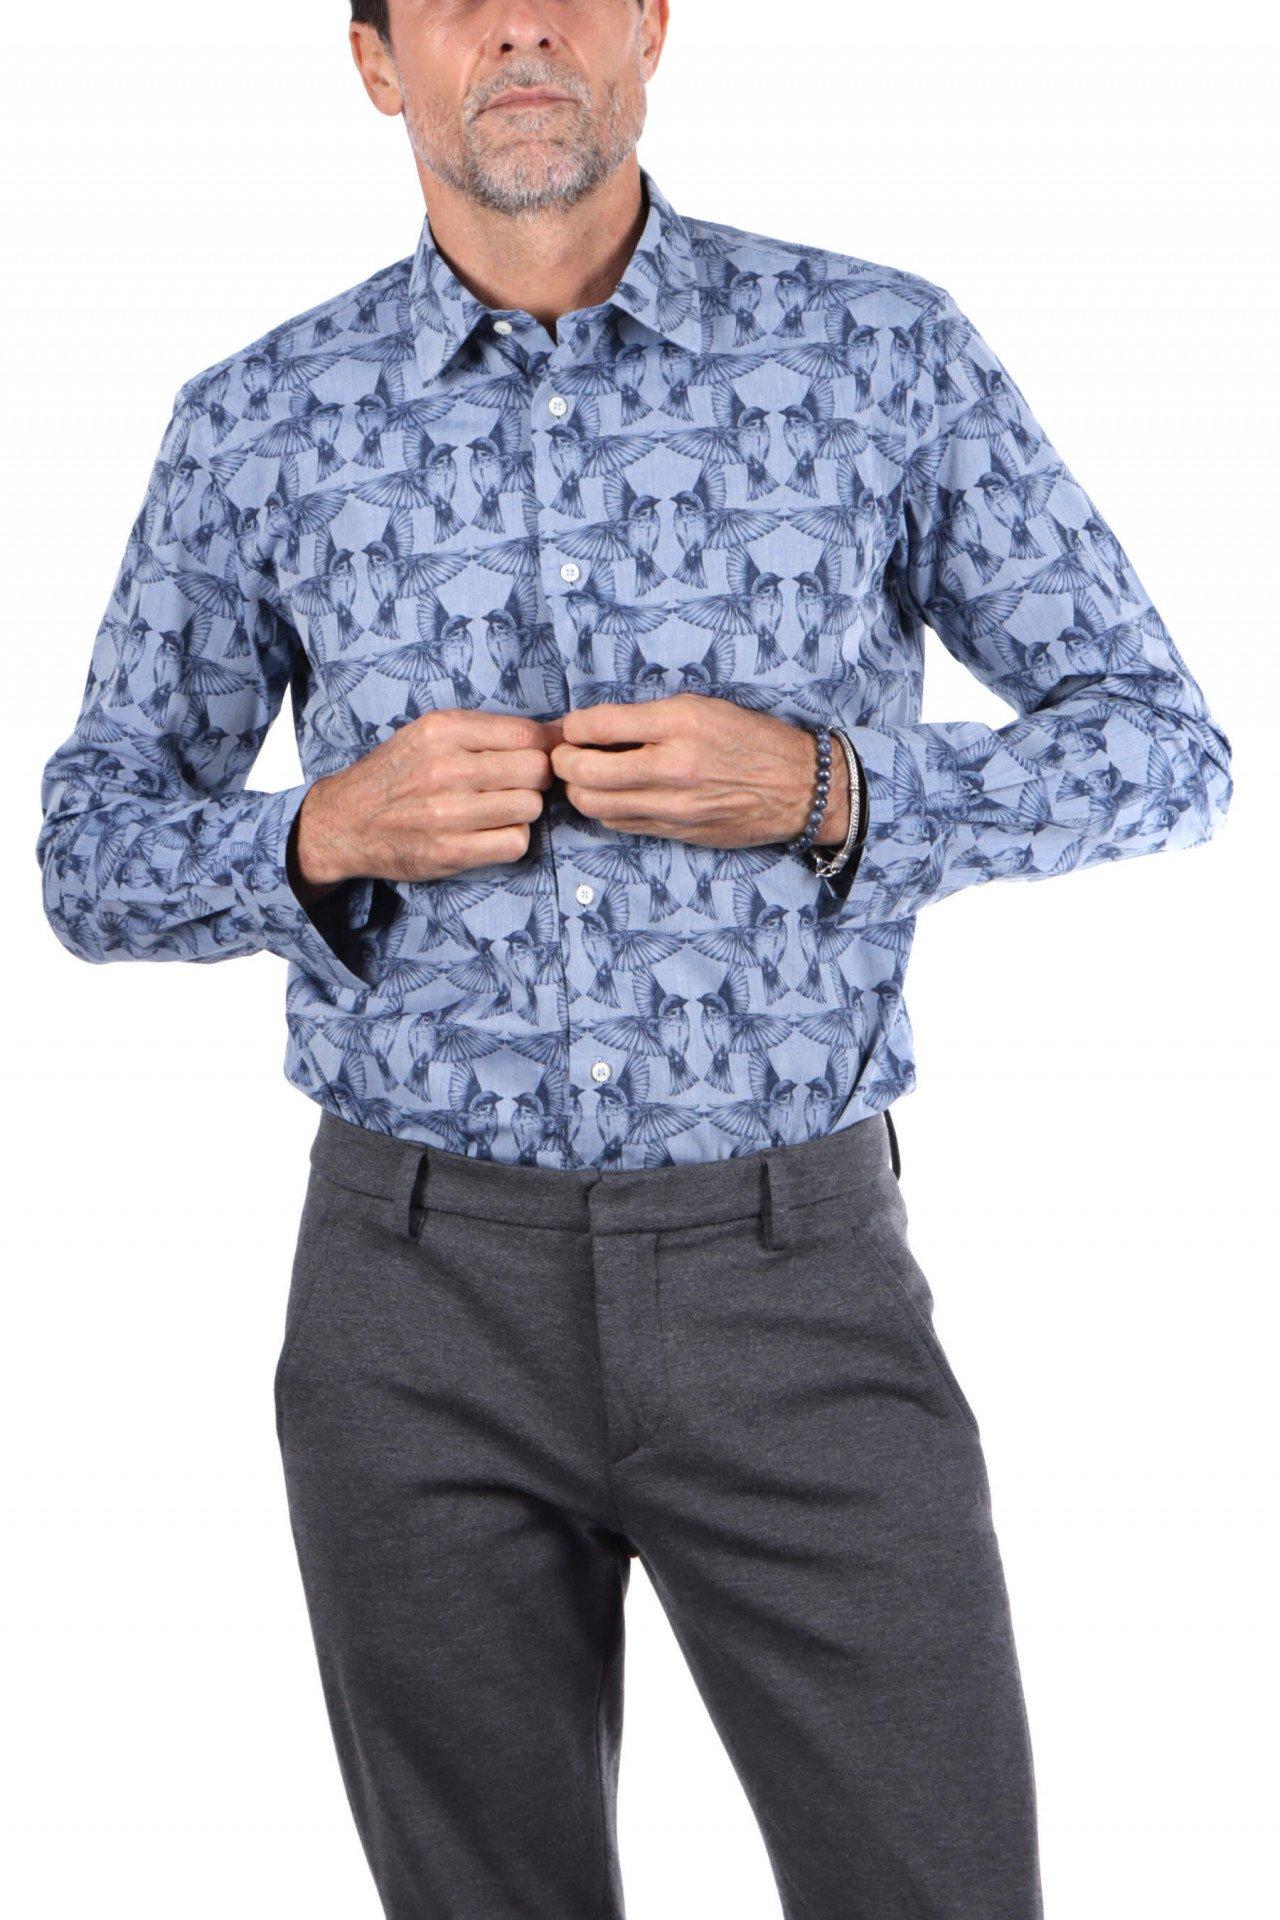 Kolibri-shirt Herren Blau XL von Atelier F&B